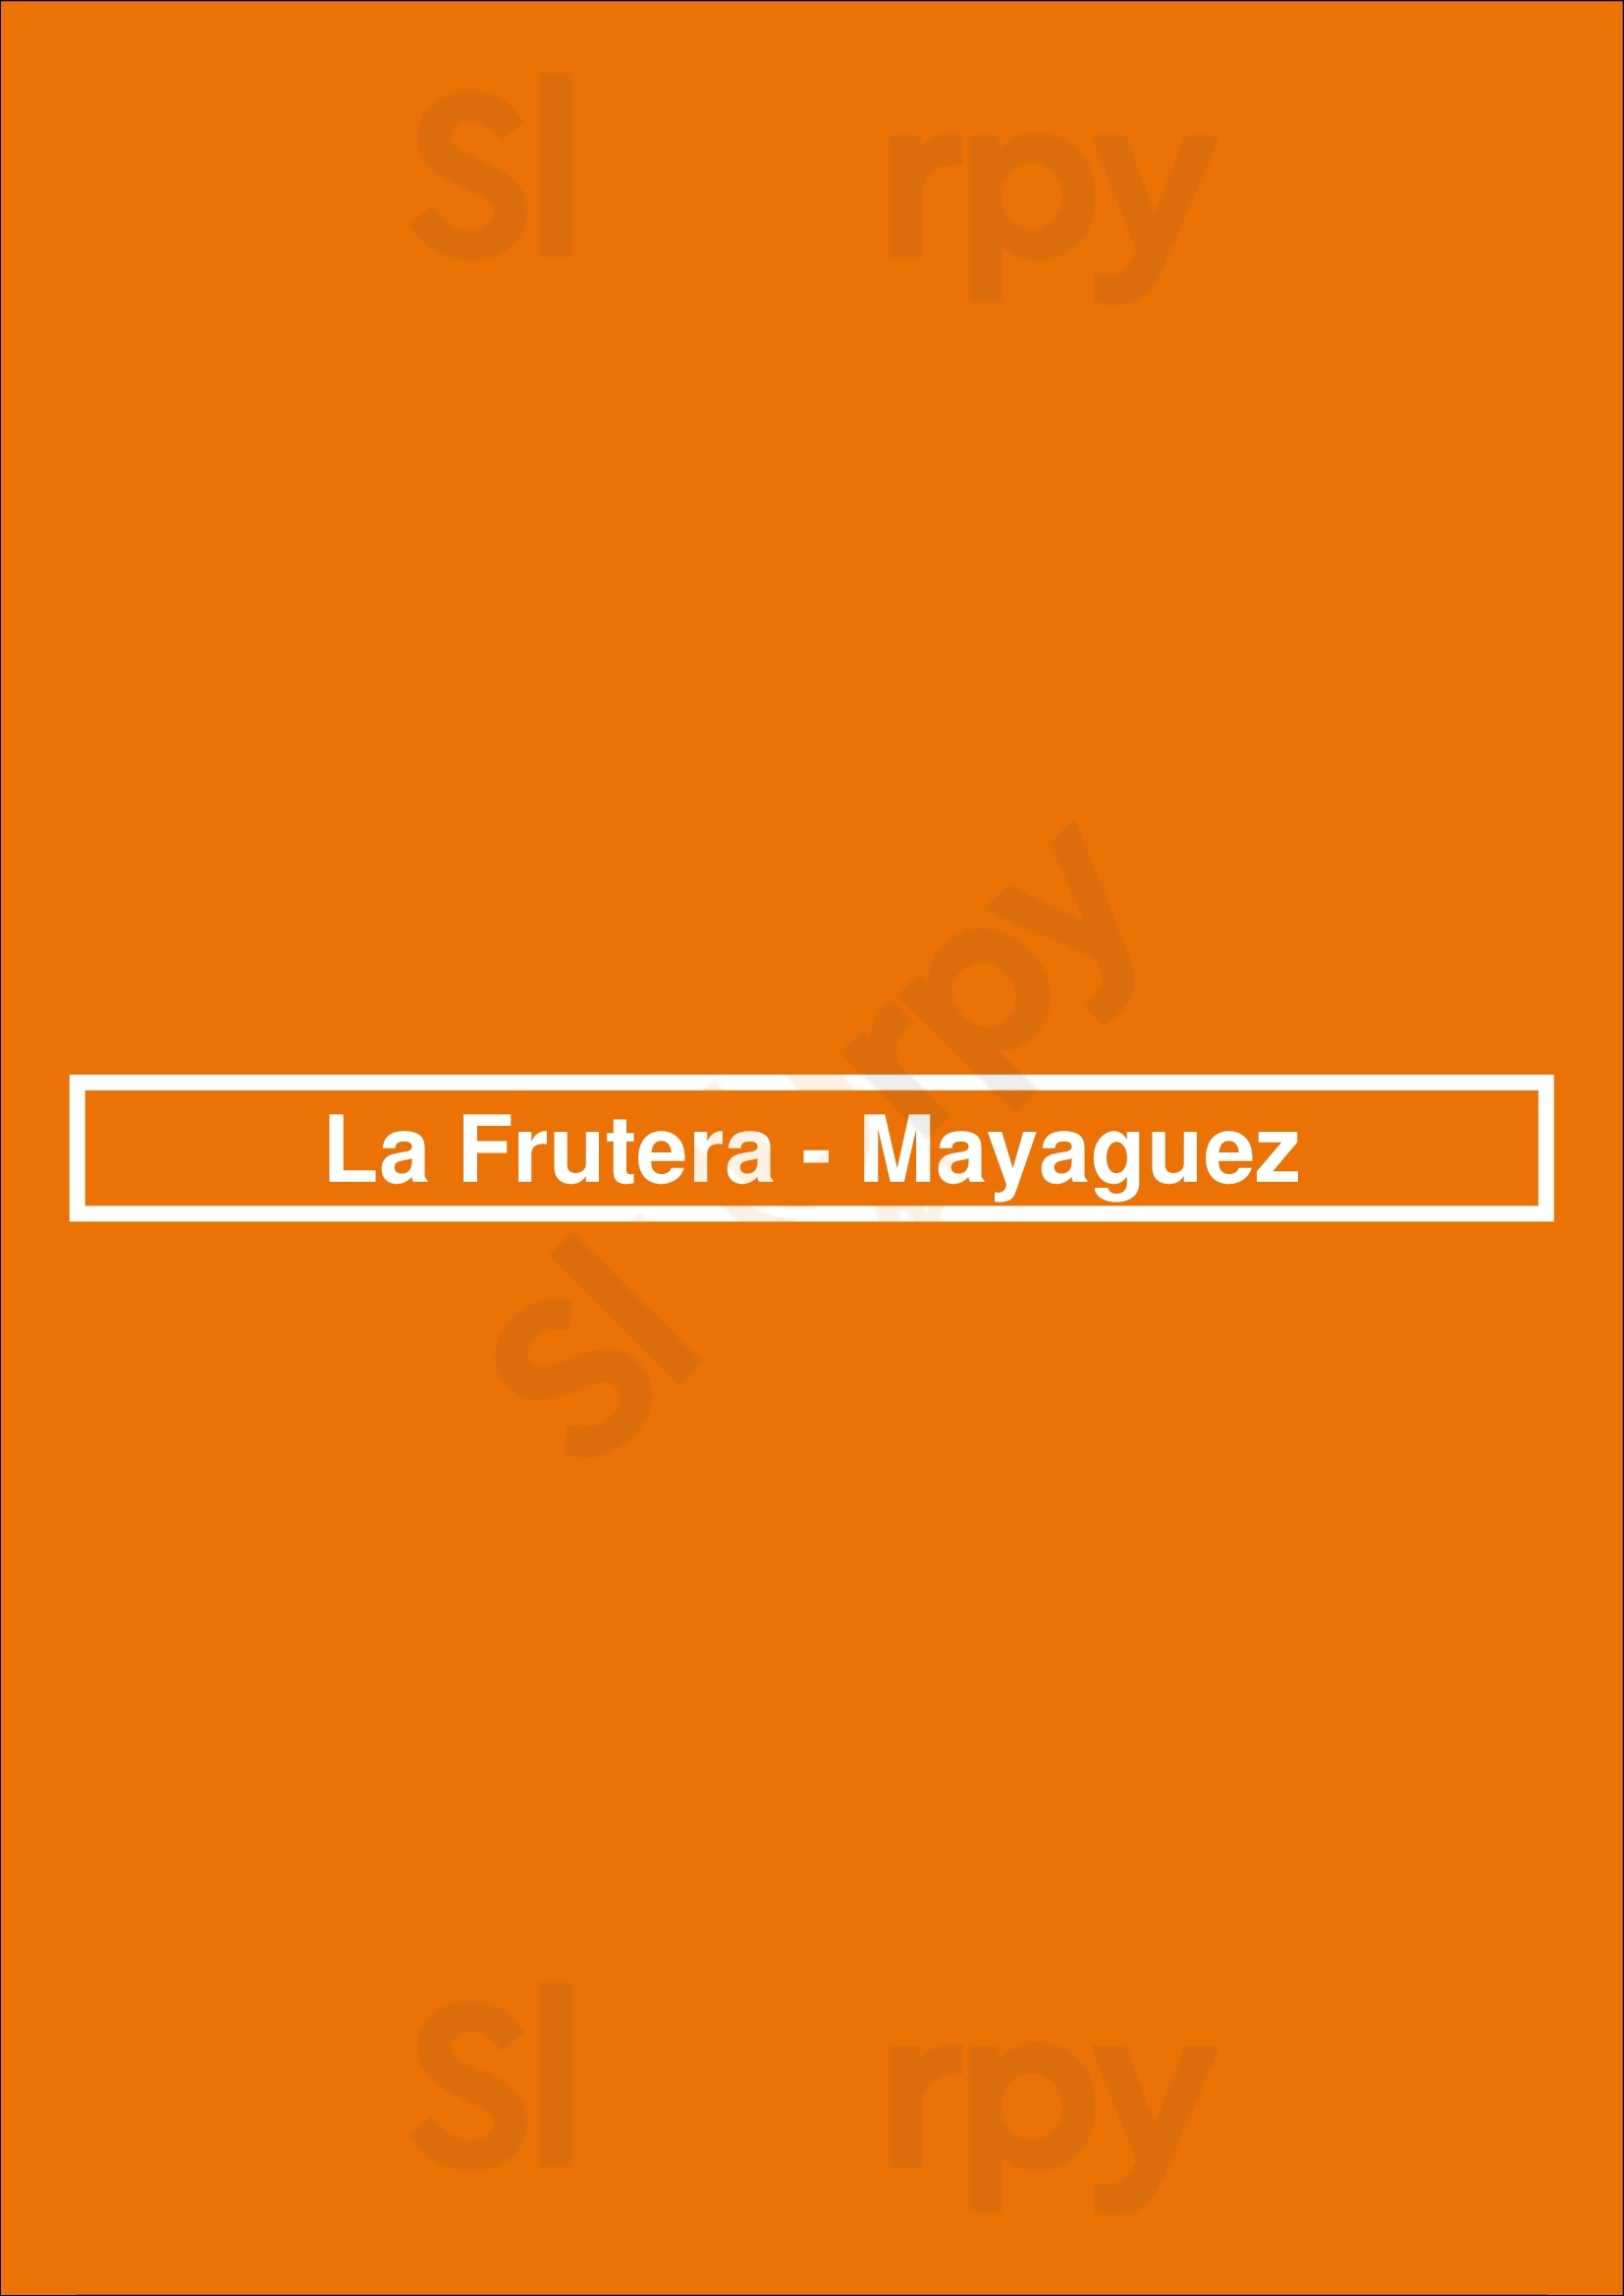 La Frutera - Mayaguez Mayaguez Menu - 1